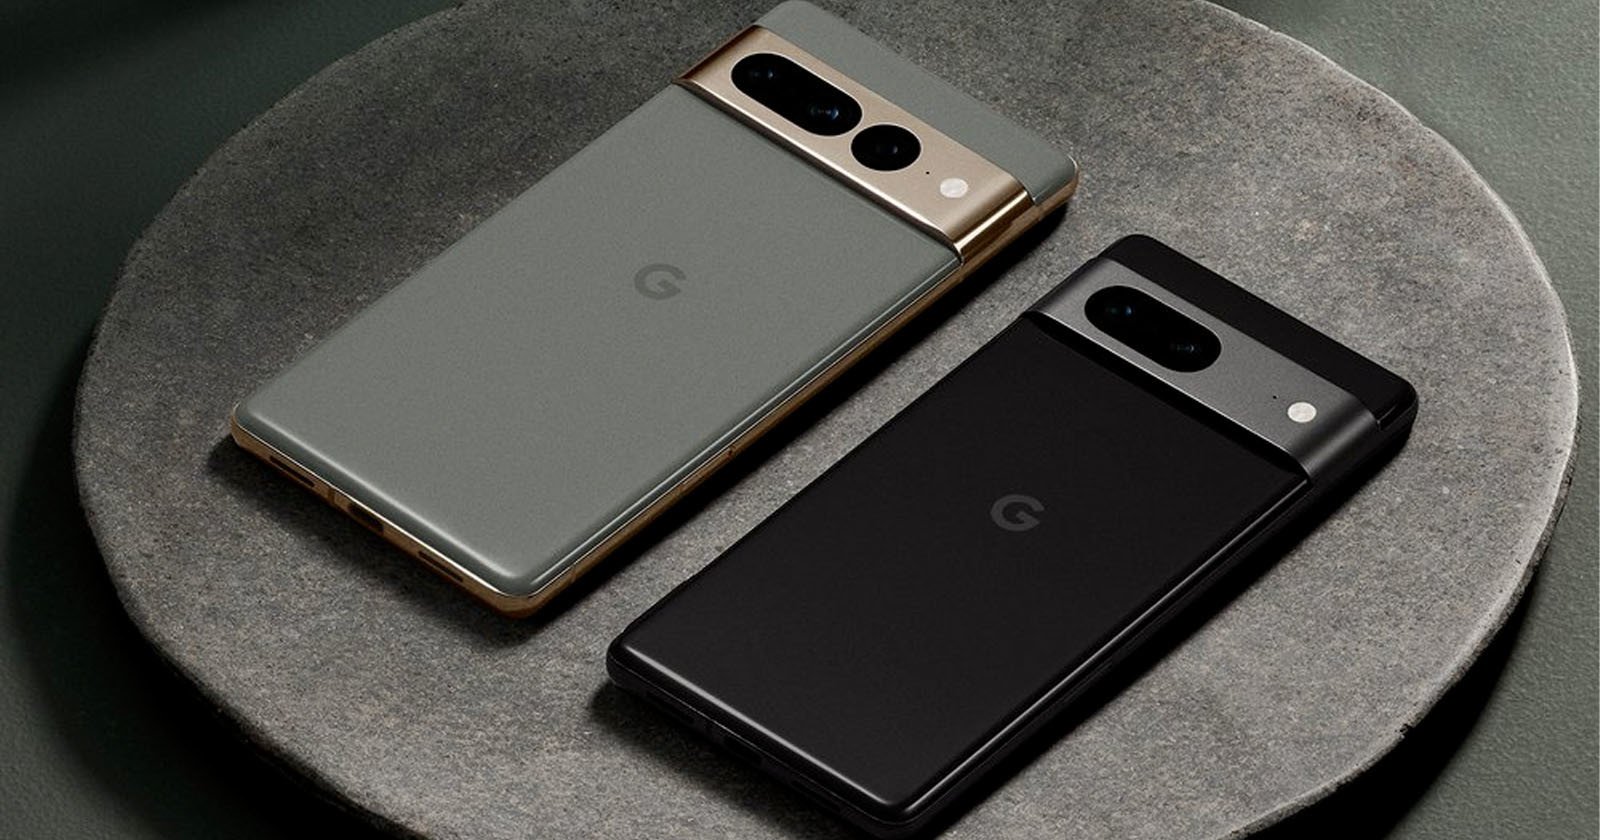  google pixel pro phones feature 